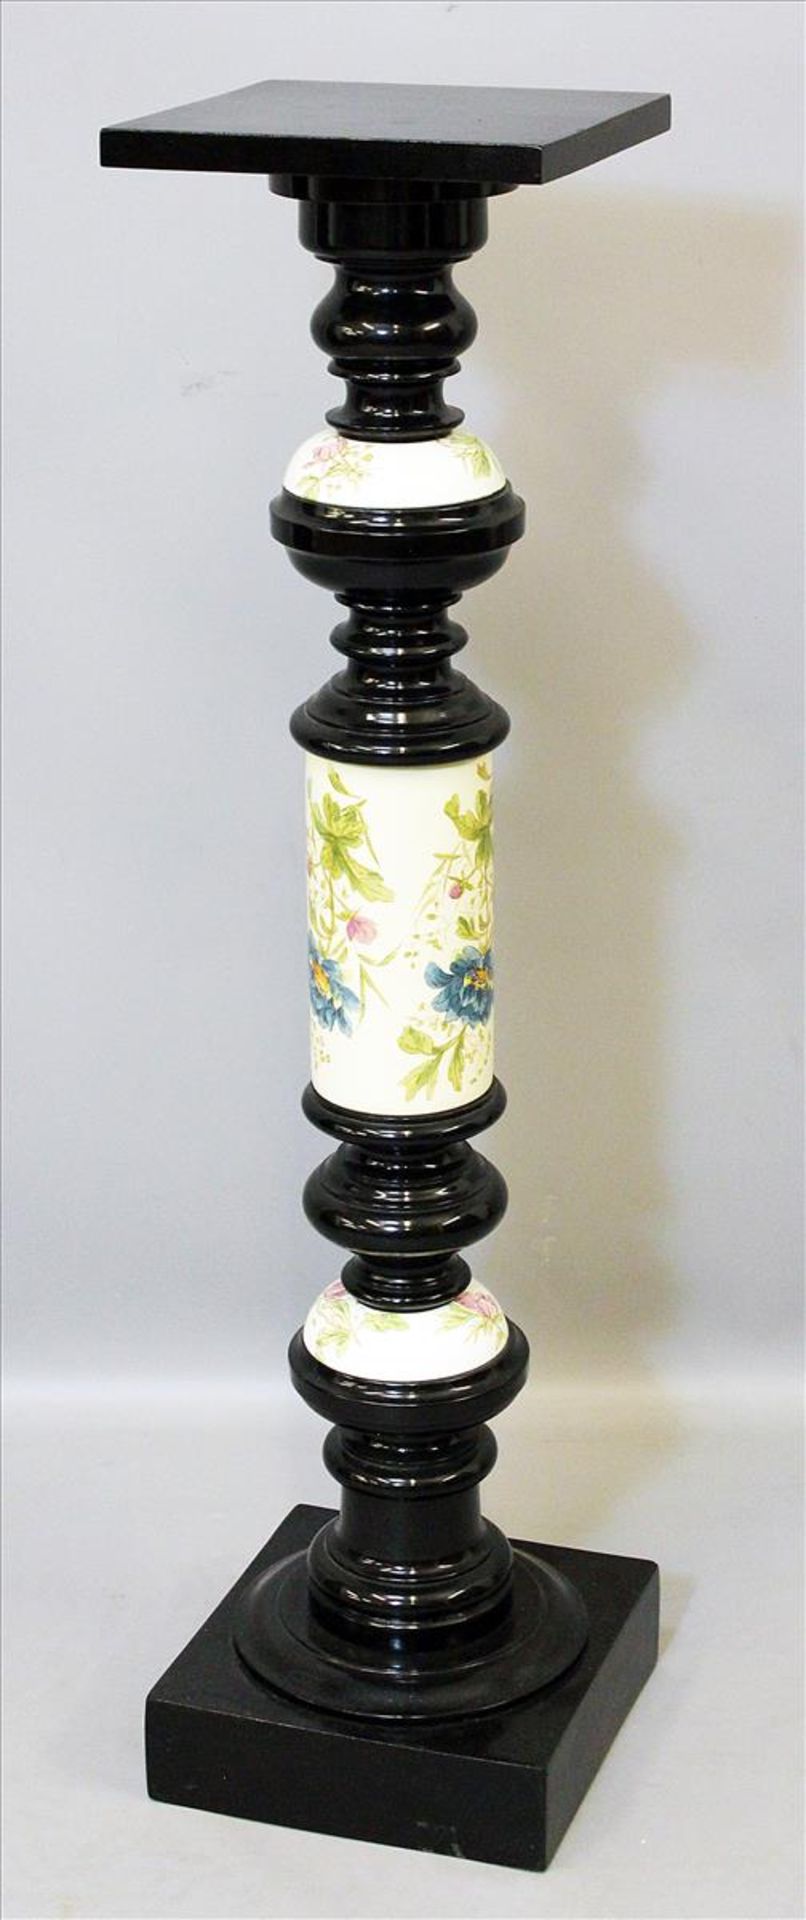 Säule.Ebonisiertes Holz. Balusterform mit Keramikeinlagen und floralem Dekor. Rest. Um 1900. 97x 24x